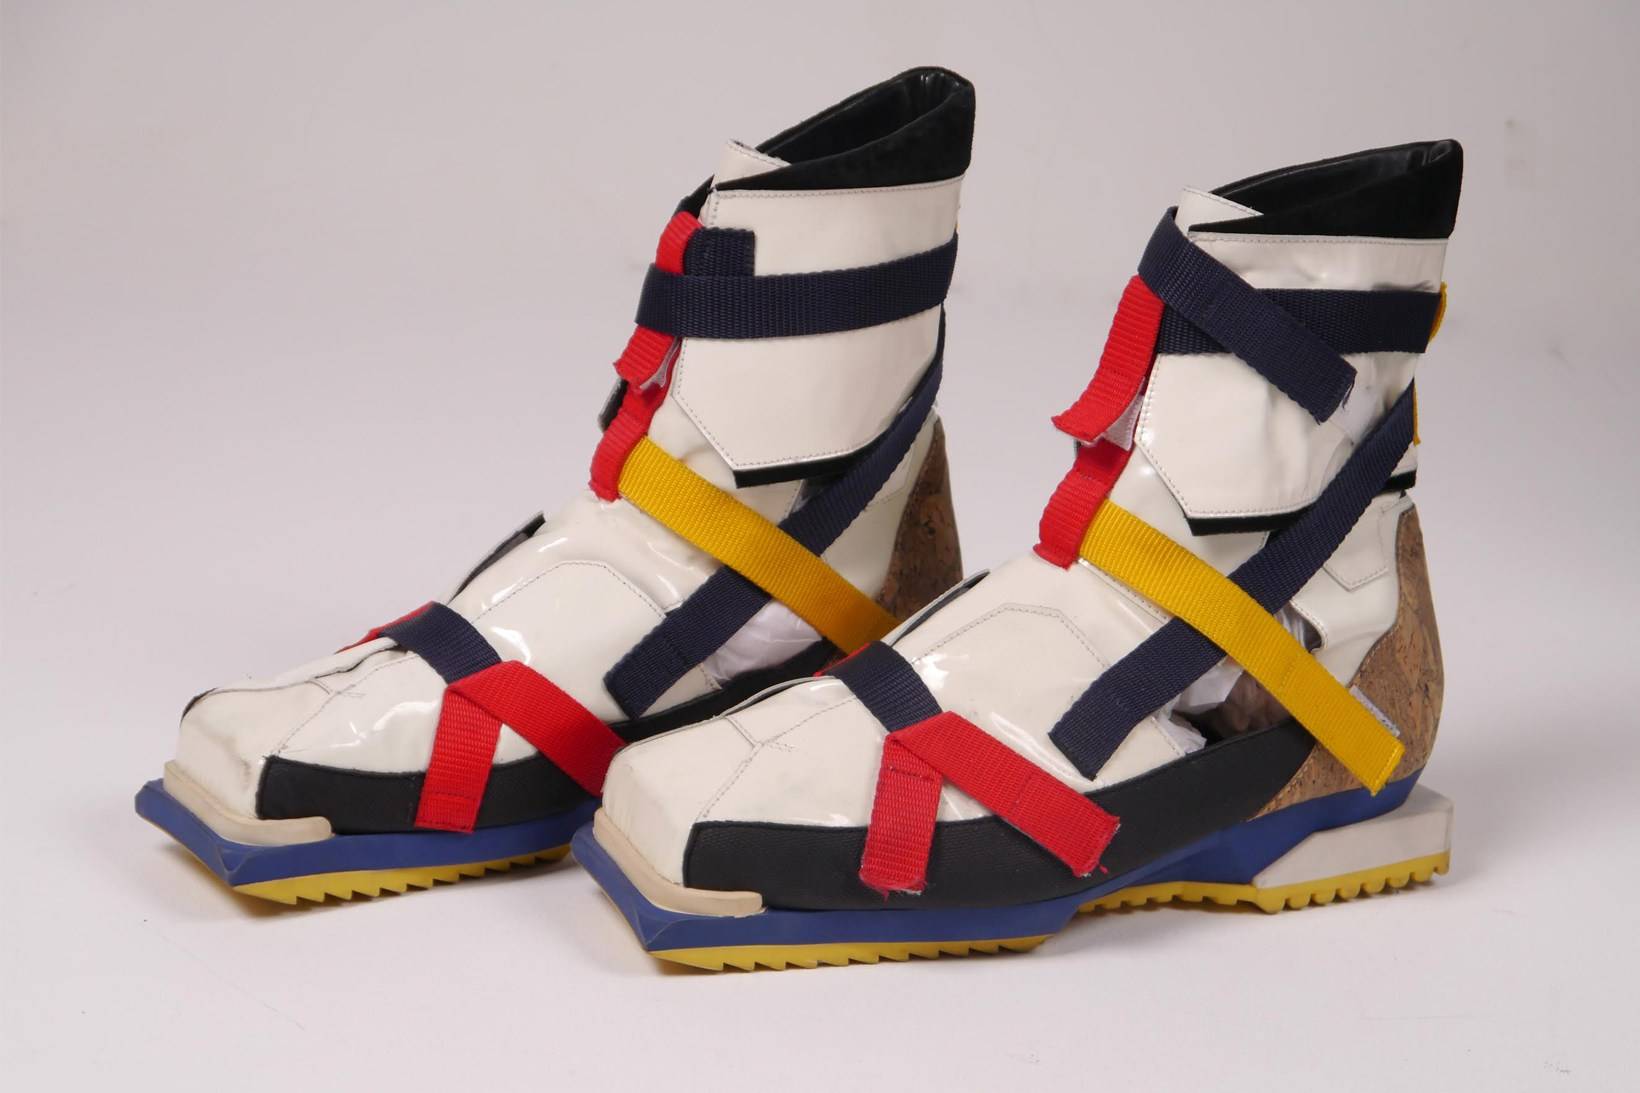 Raf Simons, chaussures “De Stijl”, extraites de la collection printemps-été 2008. Photo : The Salvages.